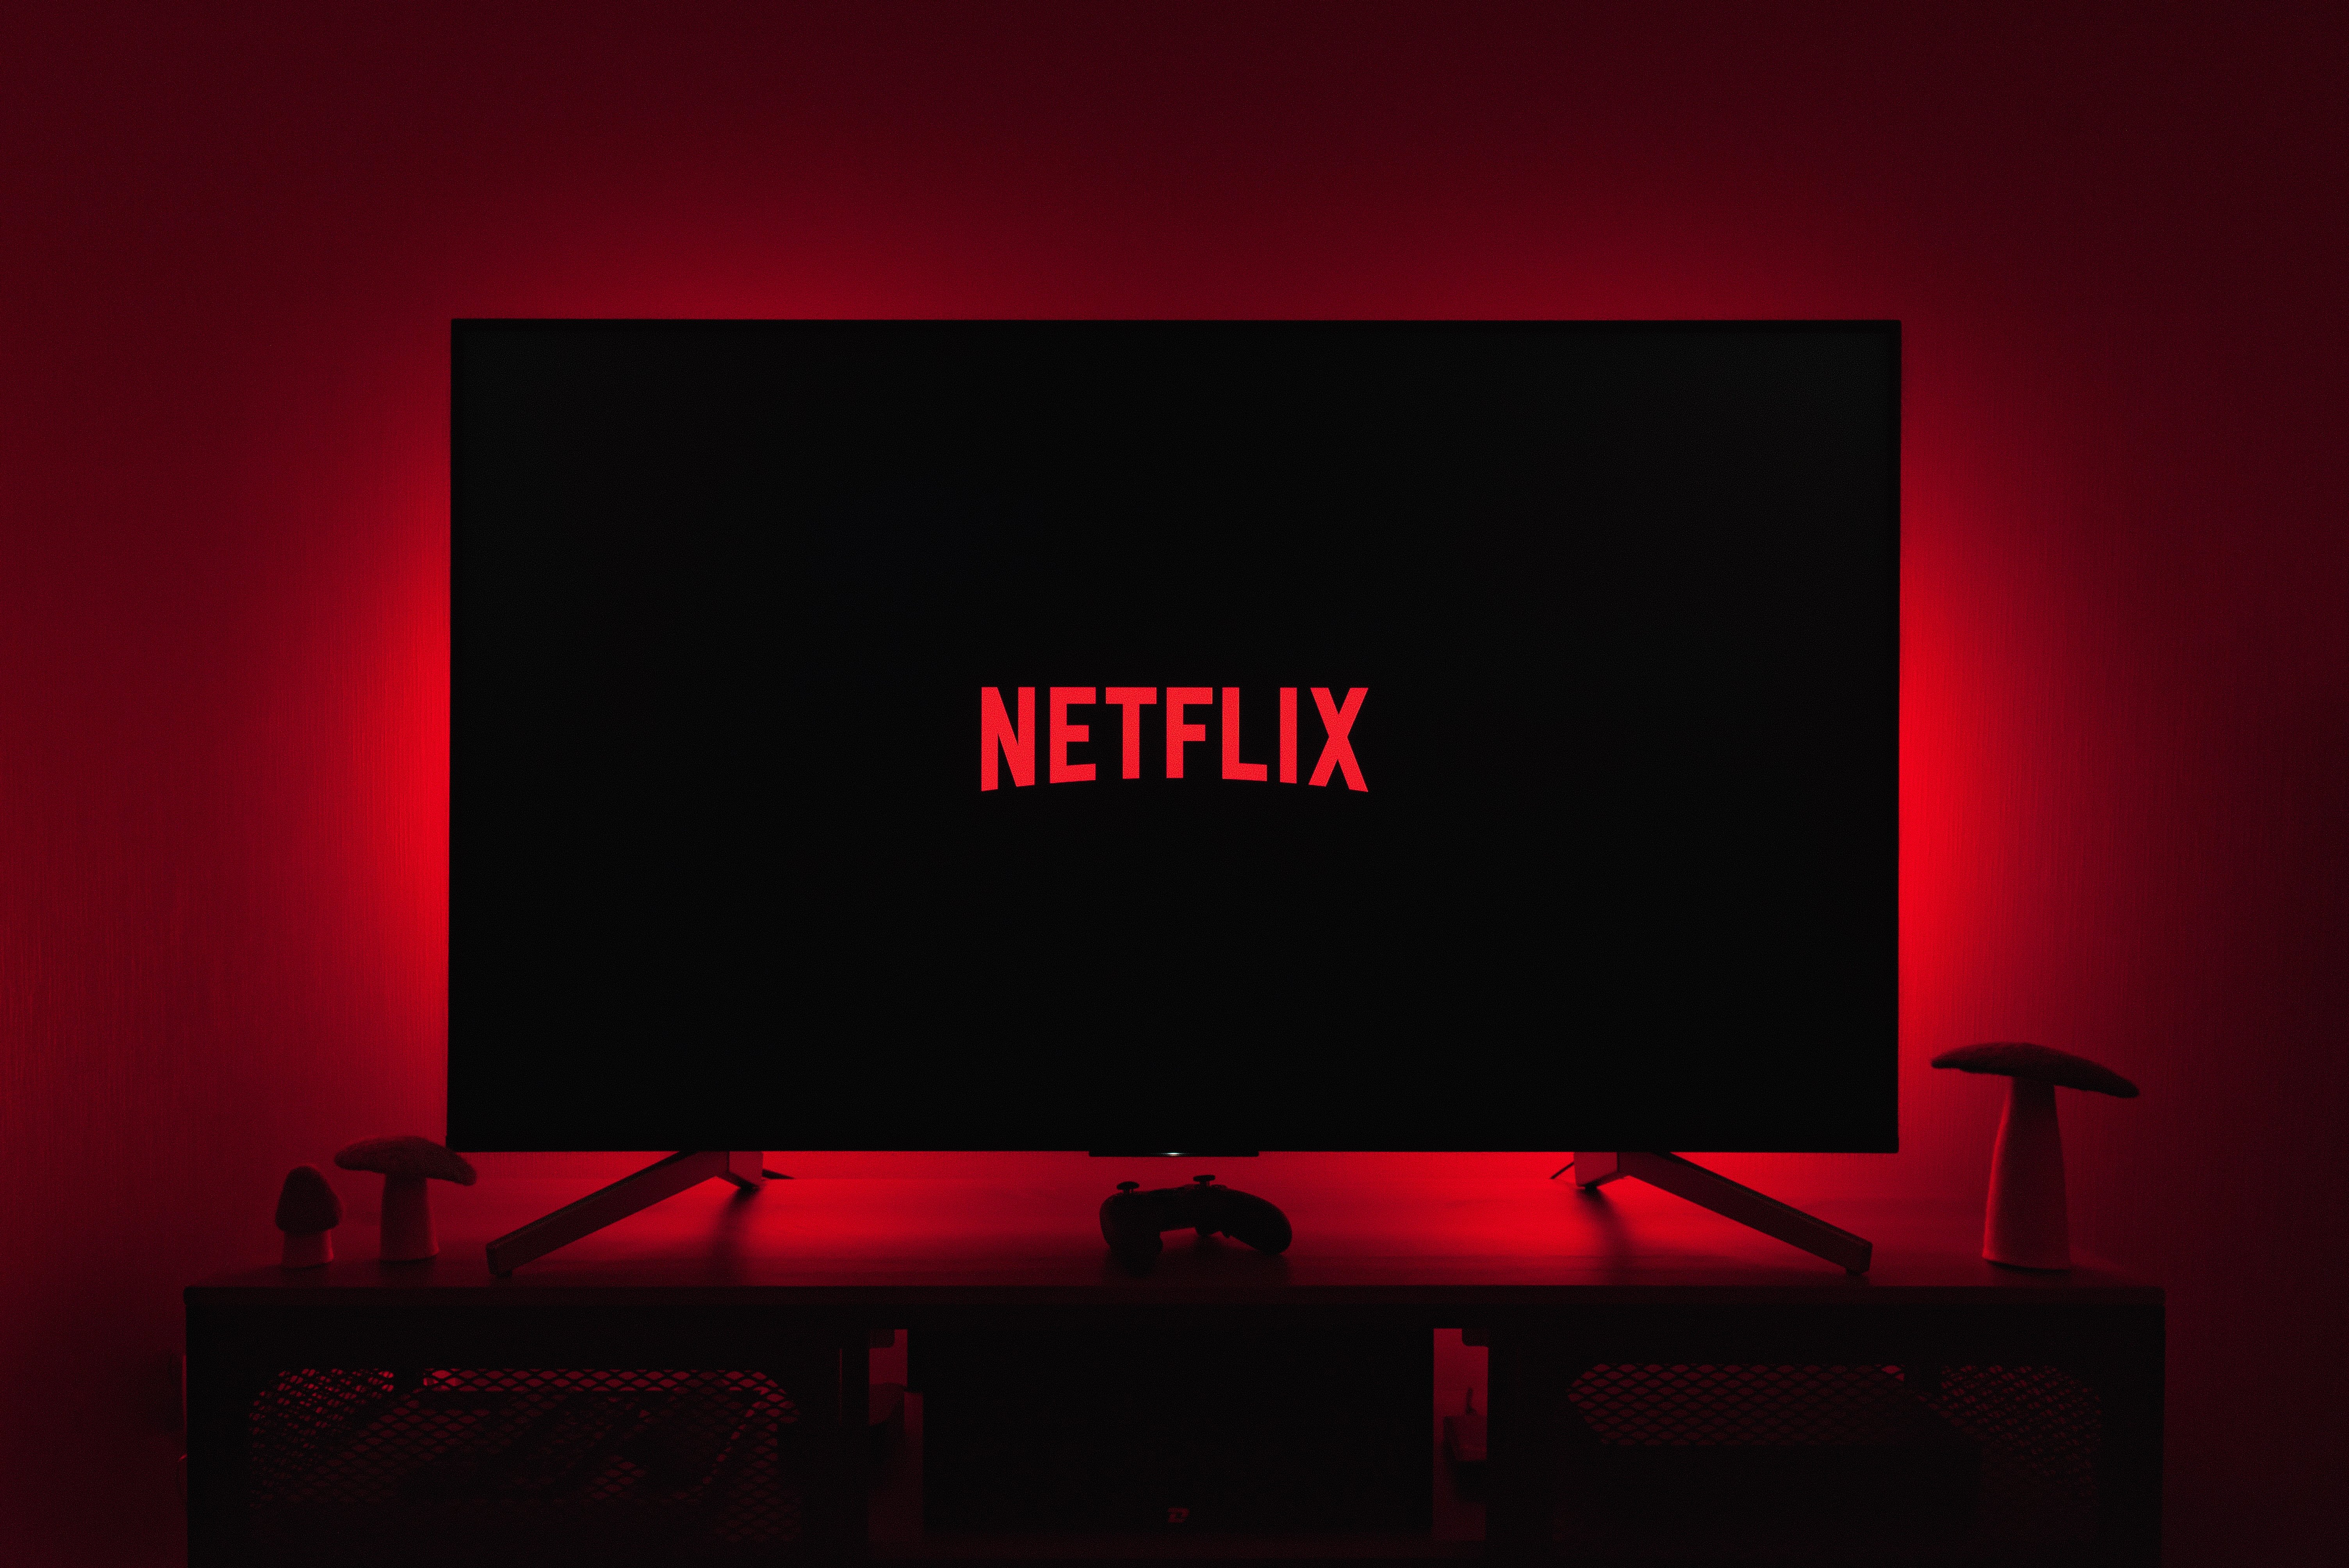 Netflix dice adiós a las cuentas compartidas: últimas horas para utilizarlas